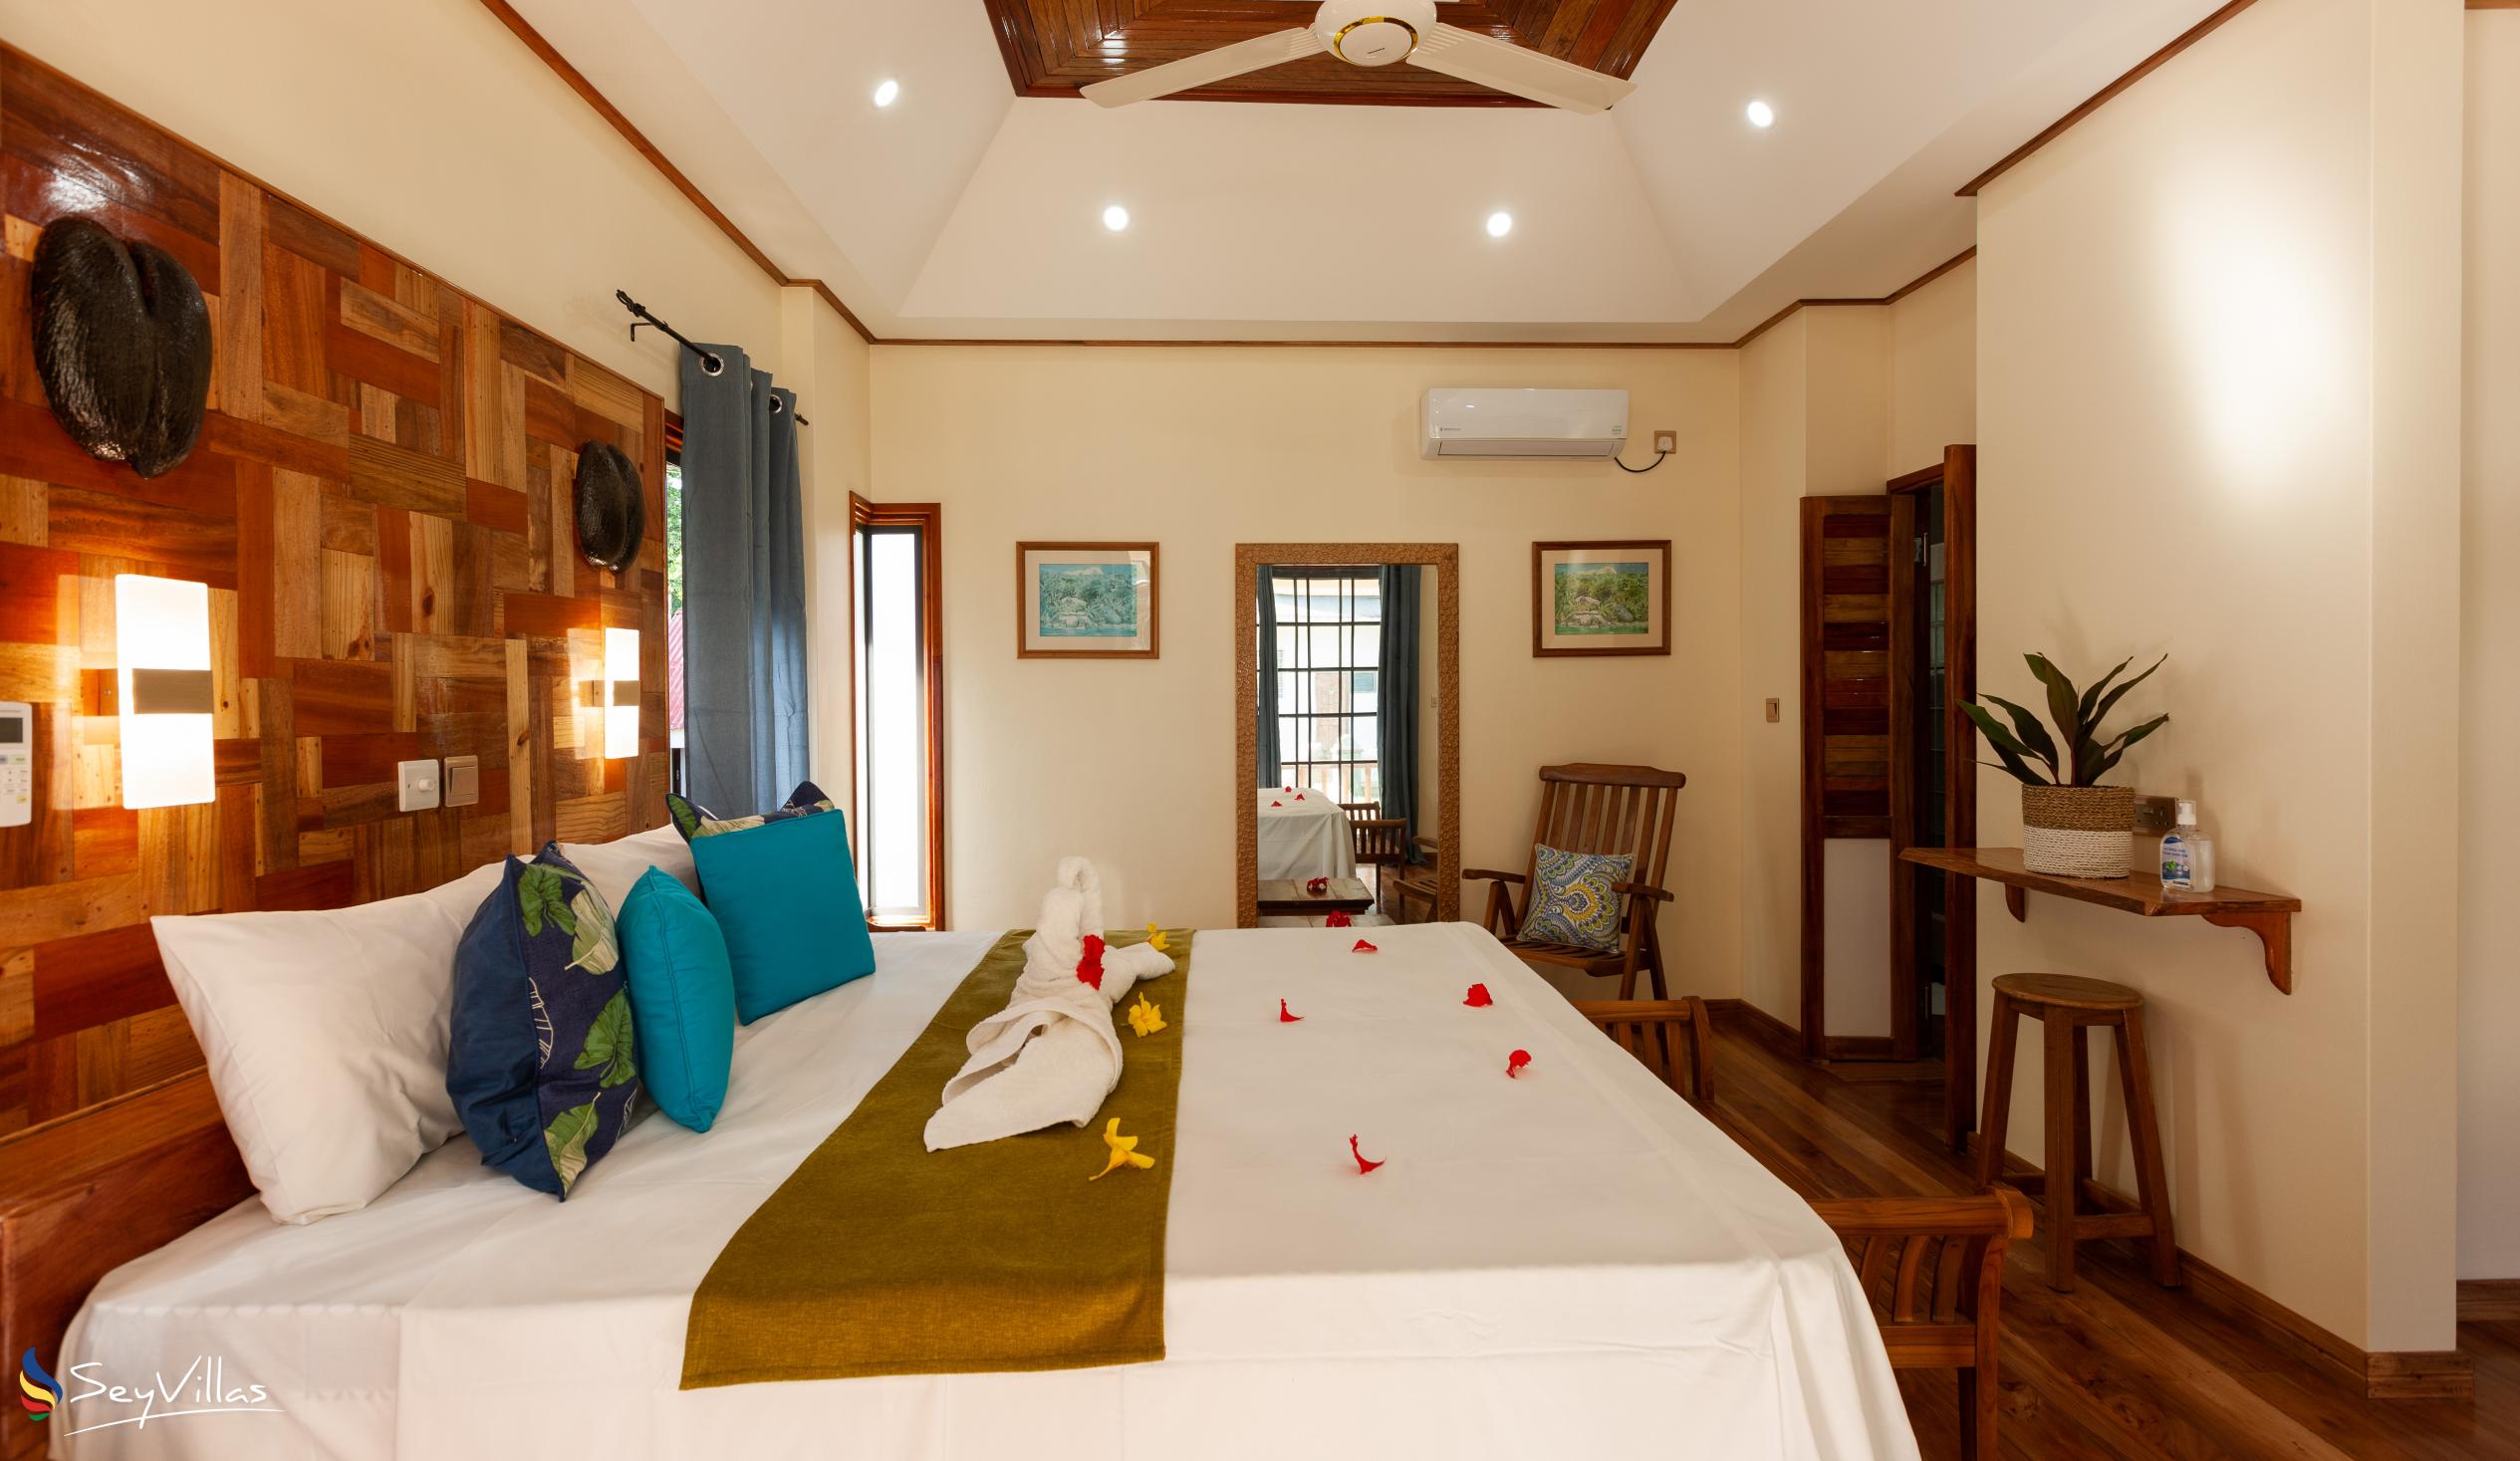 Photo 47: Calou Guesthouse - Patchouli - La Digue (Seychelles)